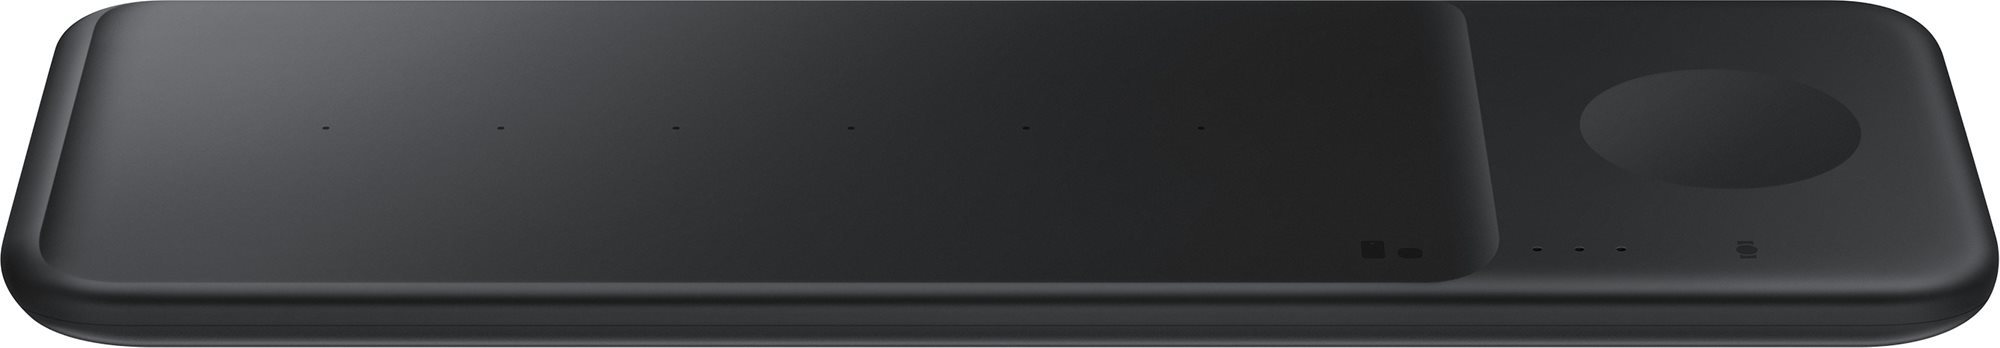 Vezeték nélküli töltő Samsung többállású vezeték nélküli töltő fekete